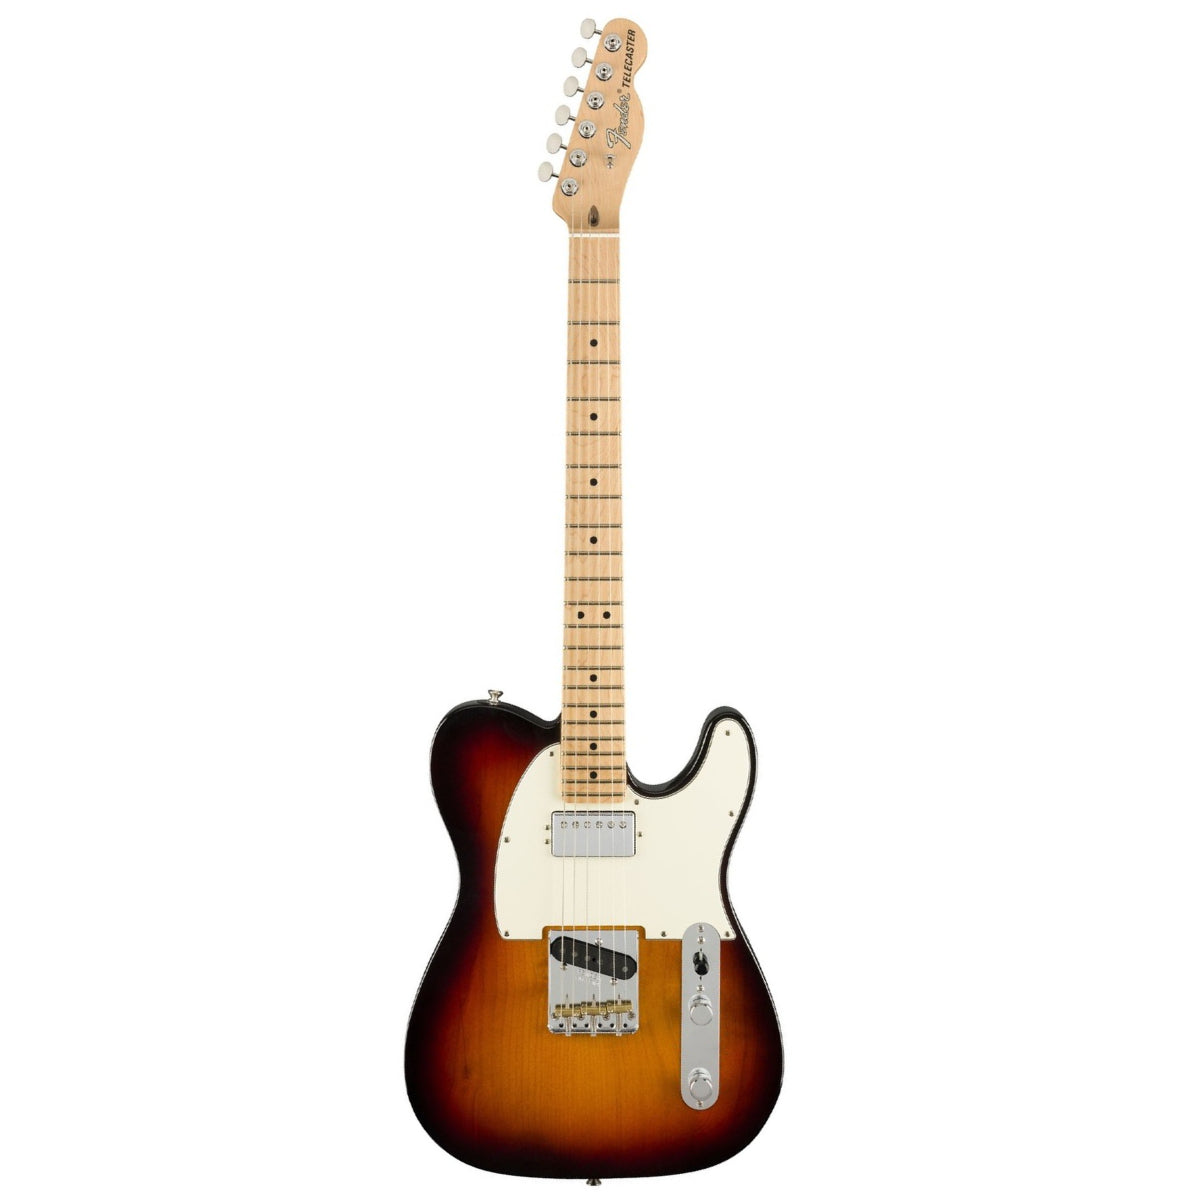 Fender American Performer